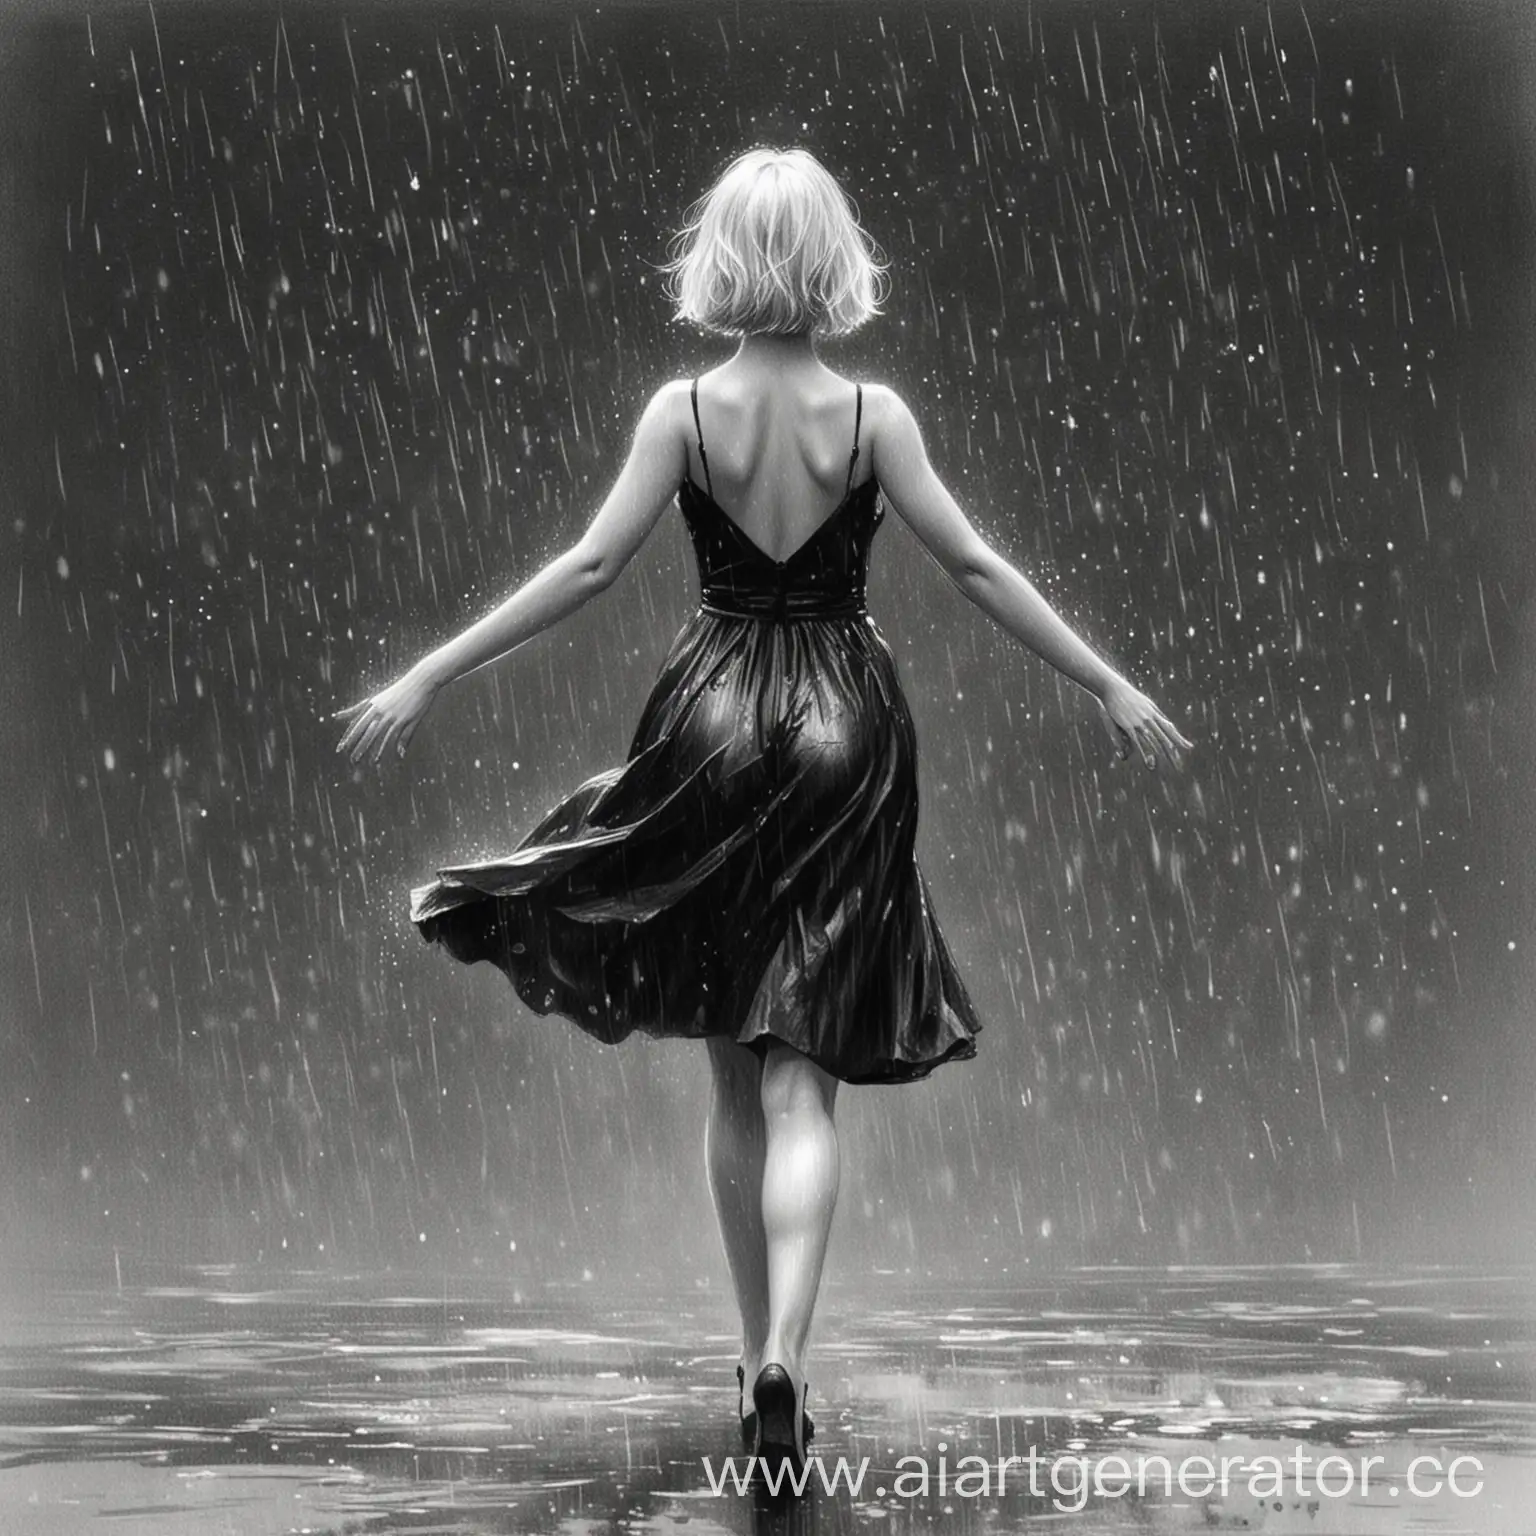 Elegant-Girl-Dancing-in-the-Rain-Sketch